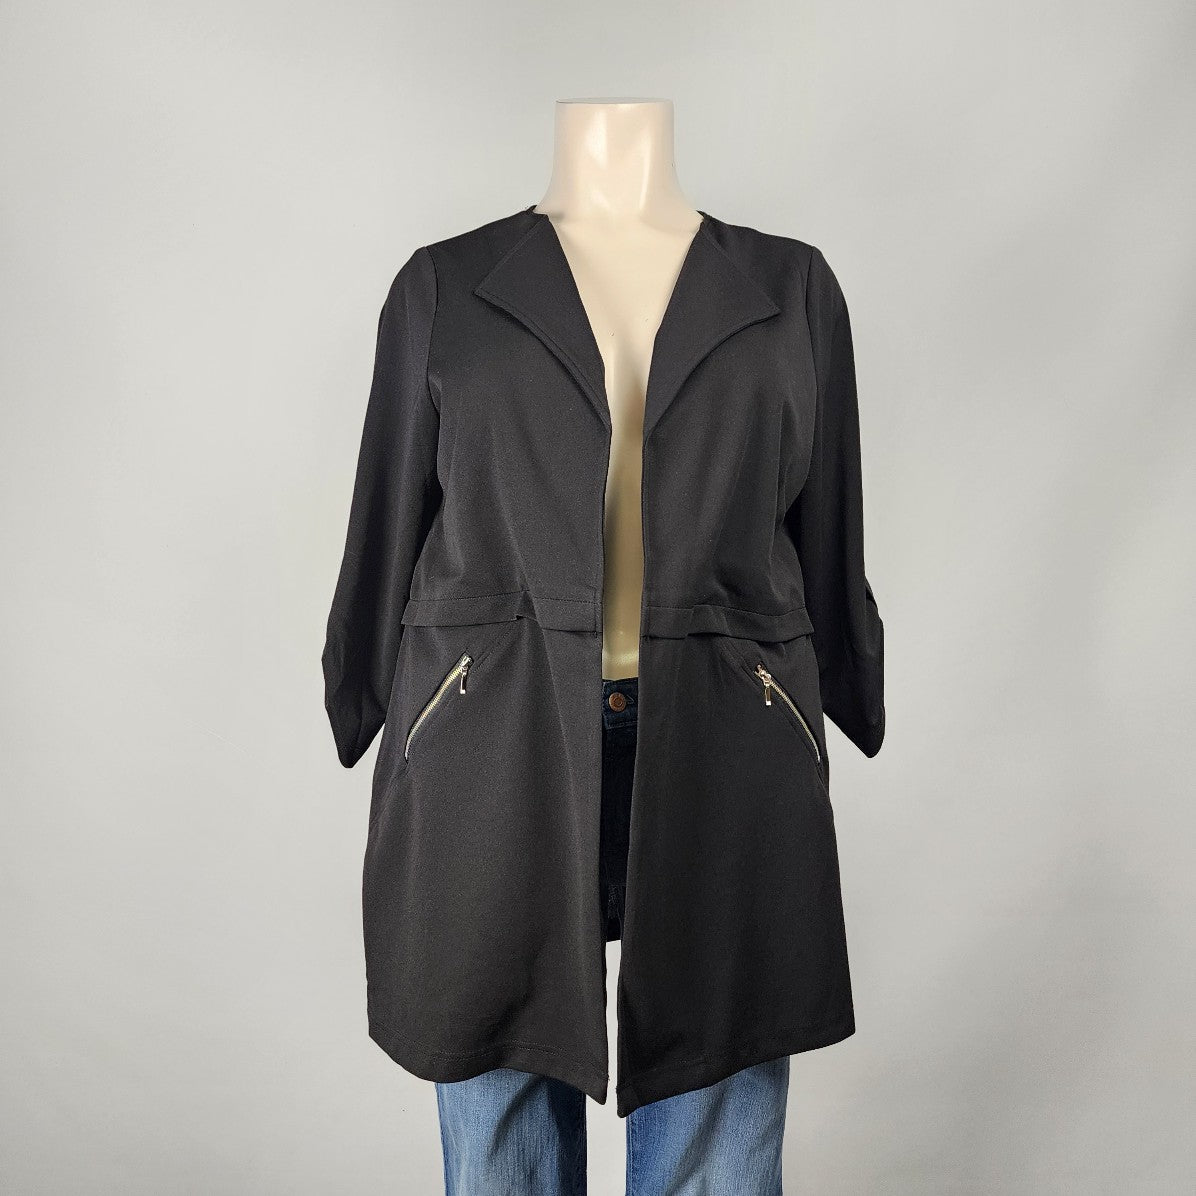 Soho Apparel Black Blazer Jacket Size 2X